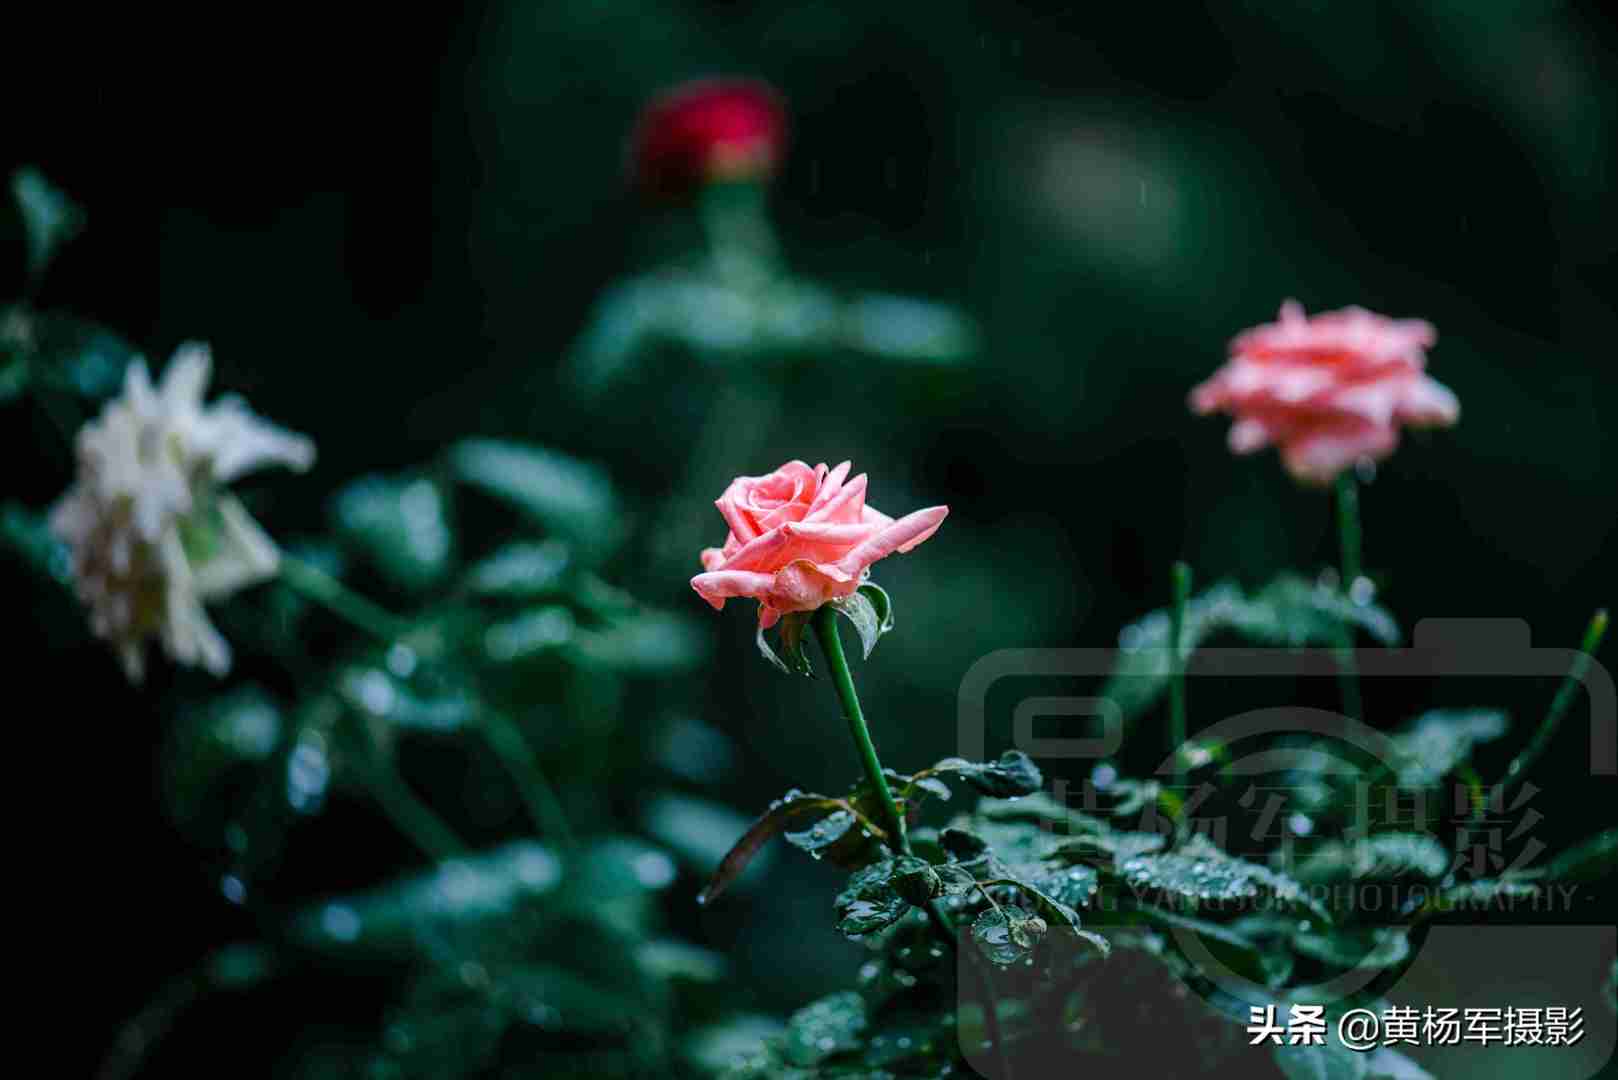 夏雨中娇艳多姿的玫瑰花，芬芳的花朵非常漂亮，妩媚绚丽的蔷薇科